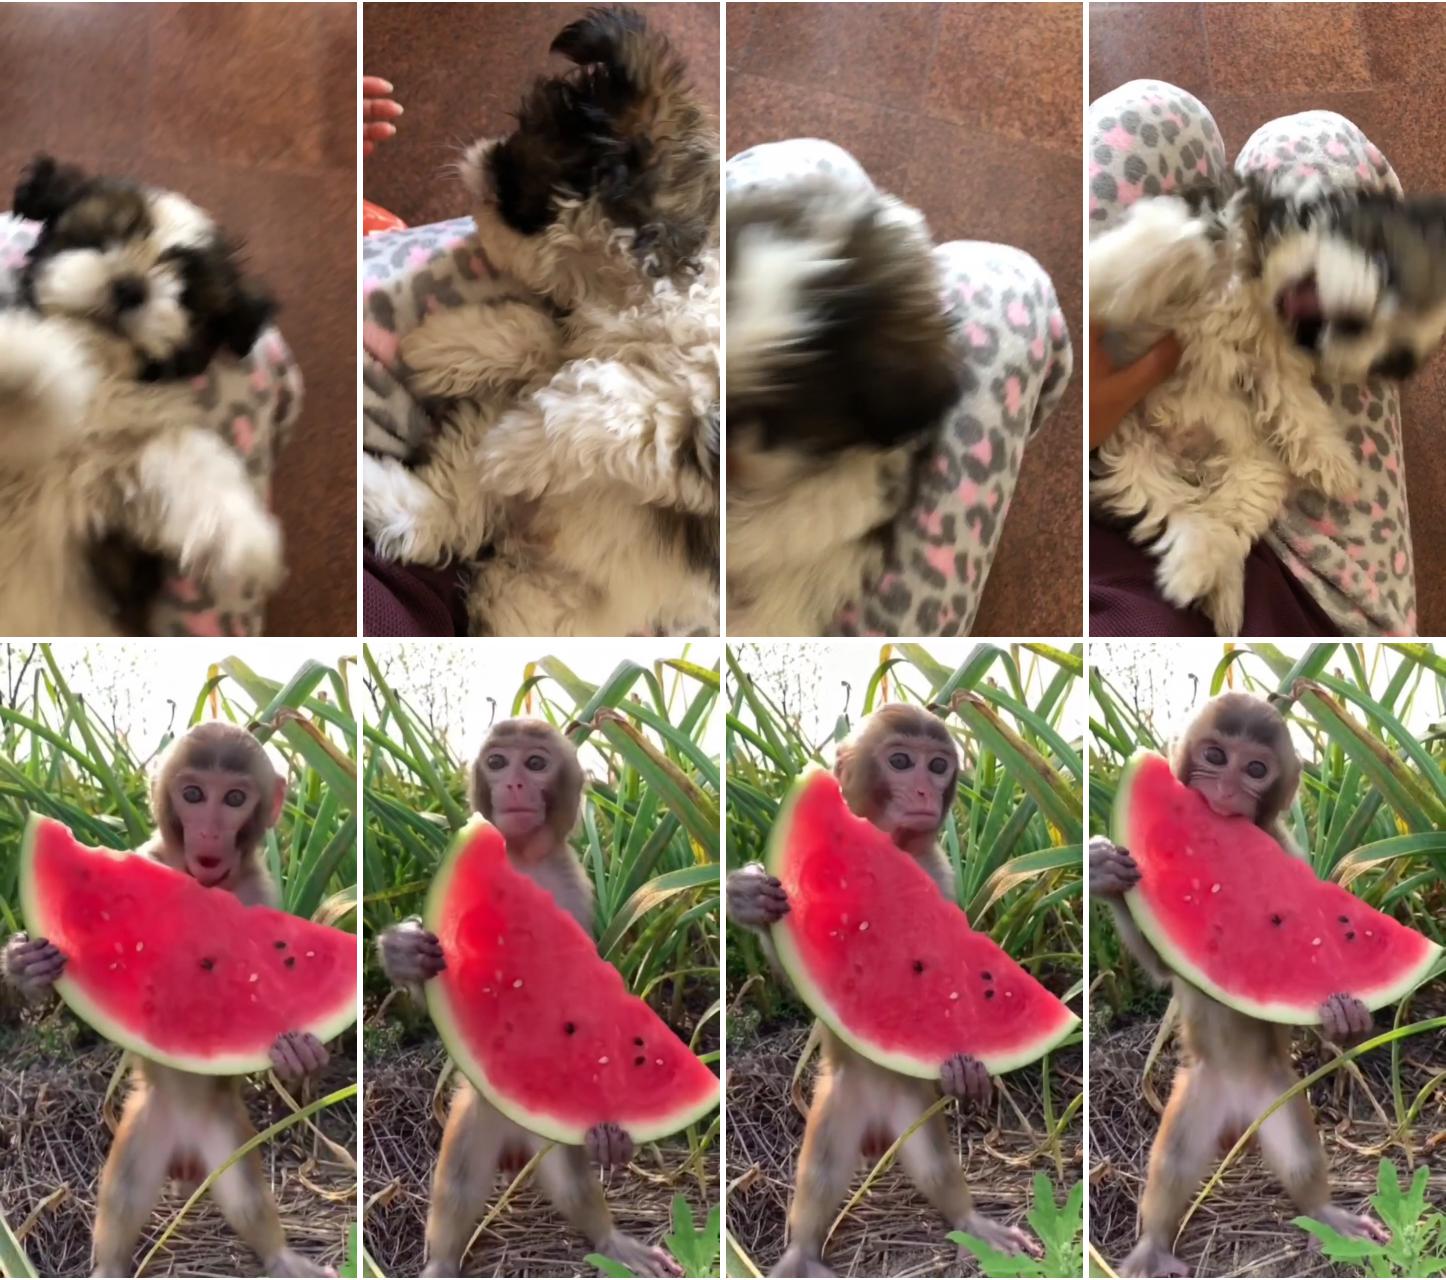 Cutest shihtzu puppy; watermelon time